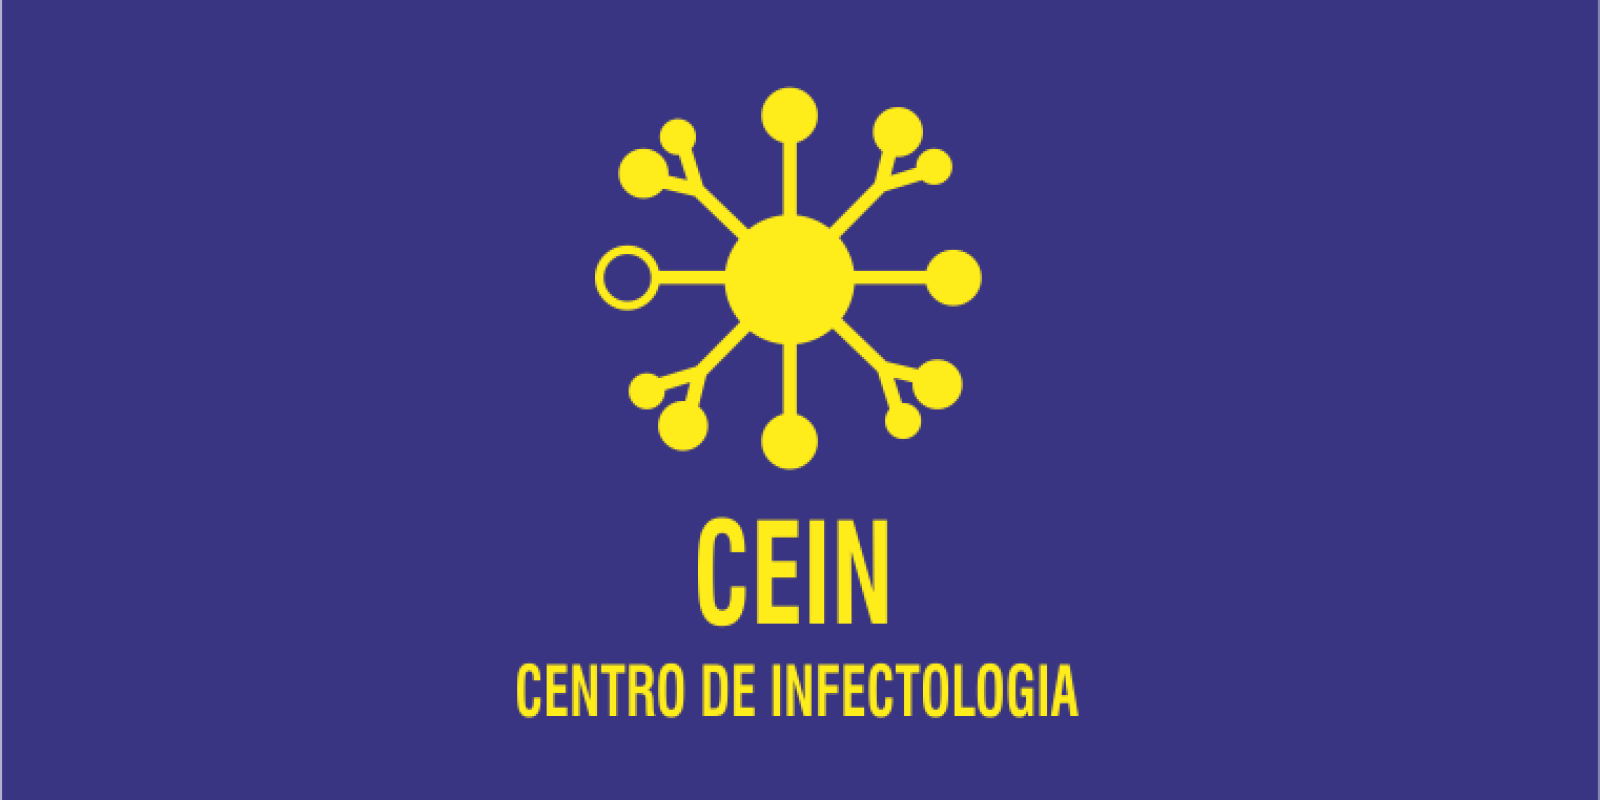 CEIN - Centro de Infectolgia 